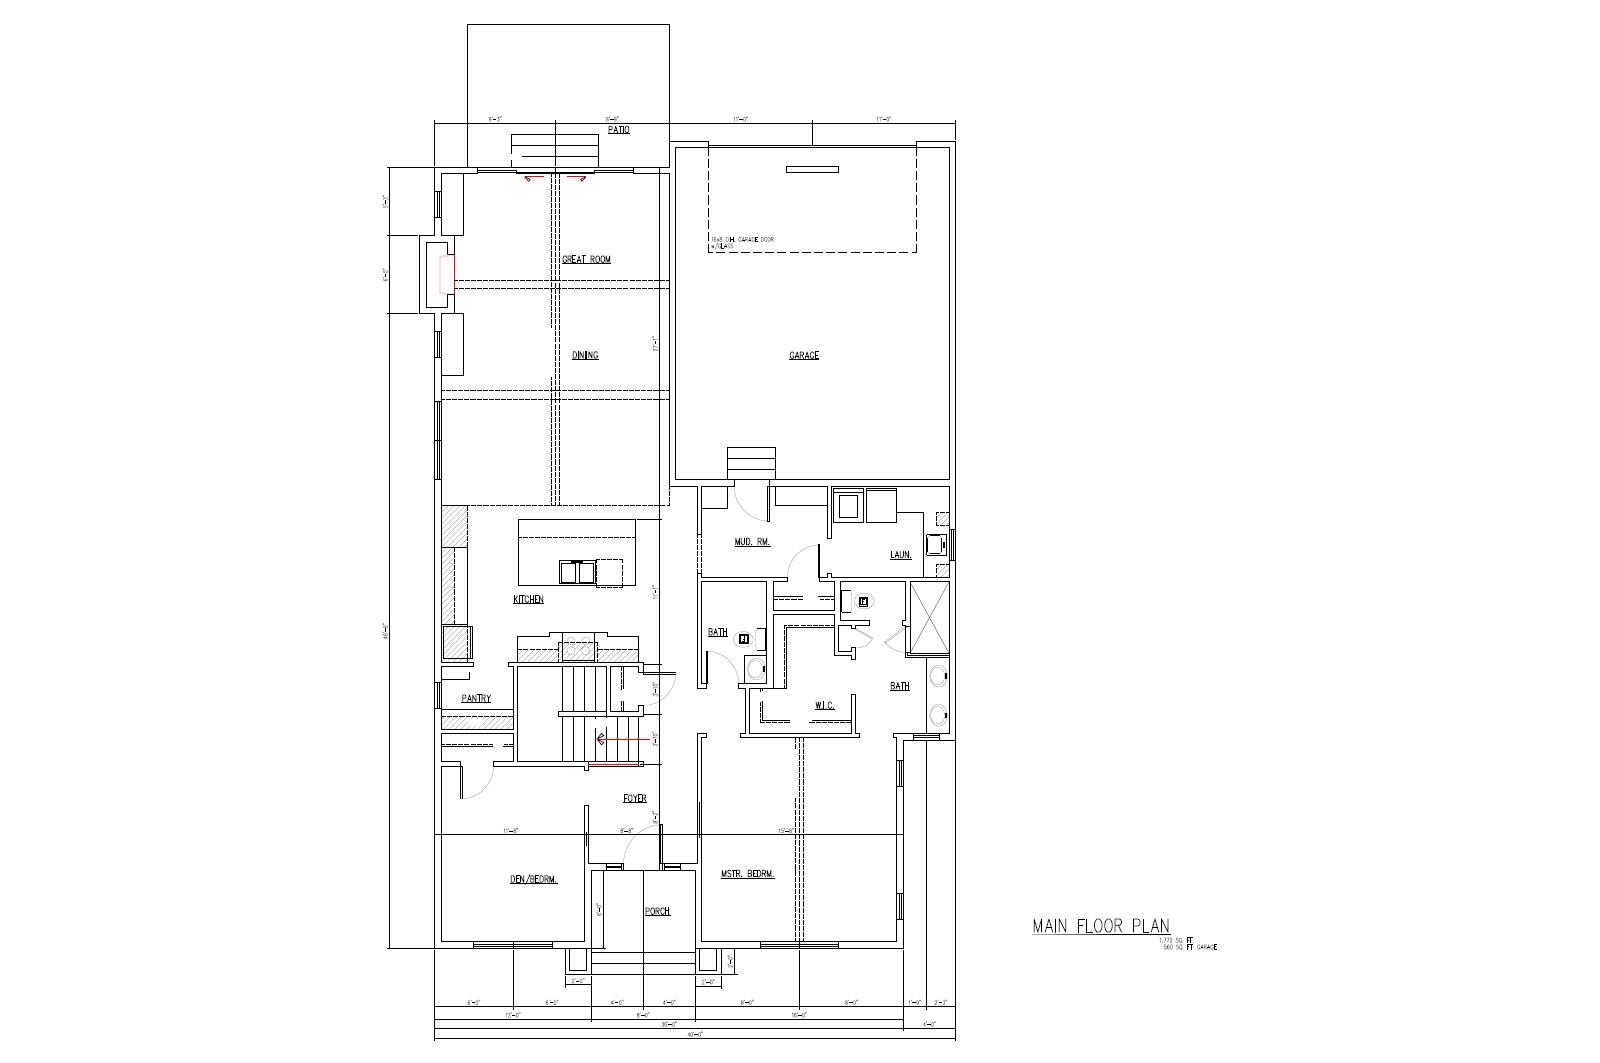 TJB #677 “Tammy” Villa Home Plan Main Floor Plan